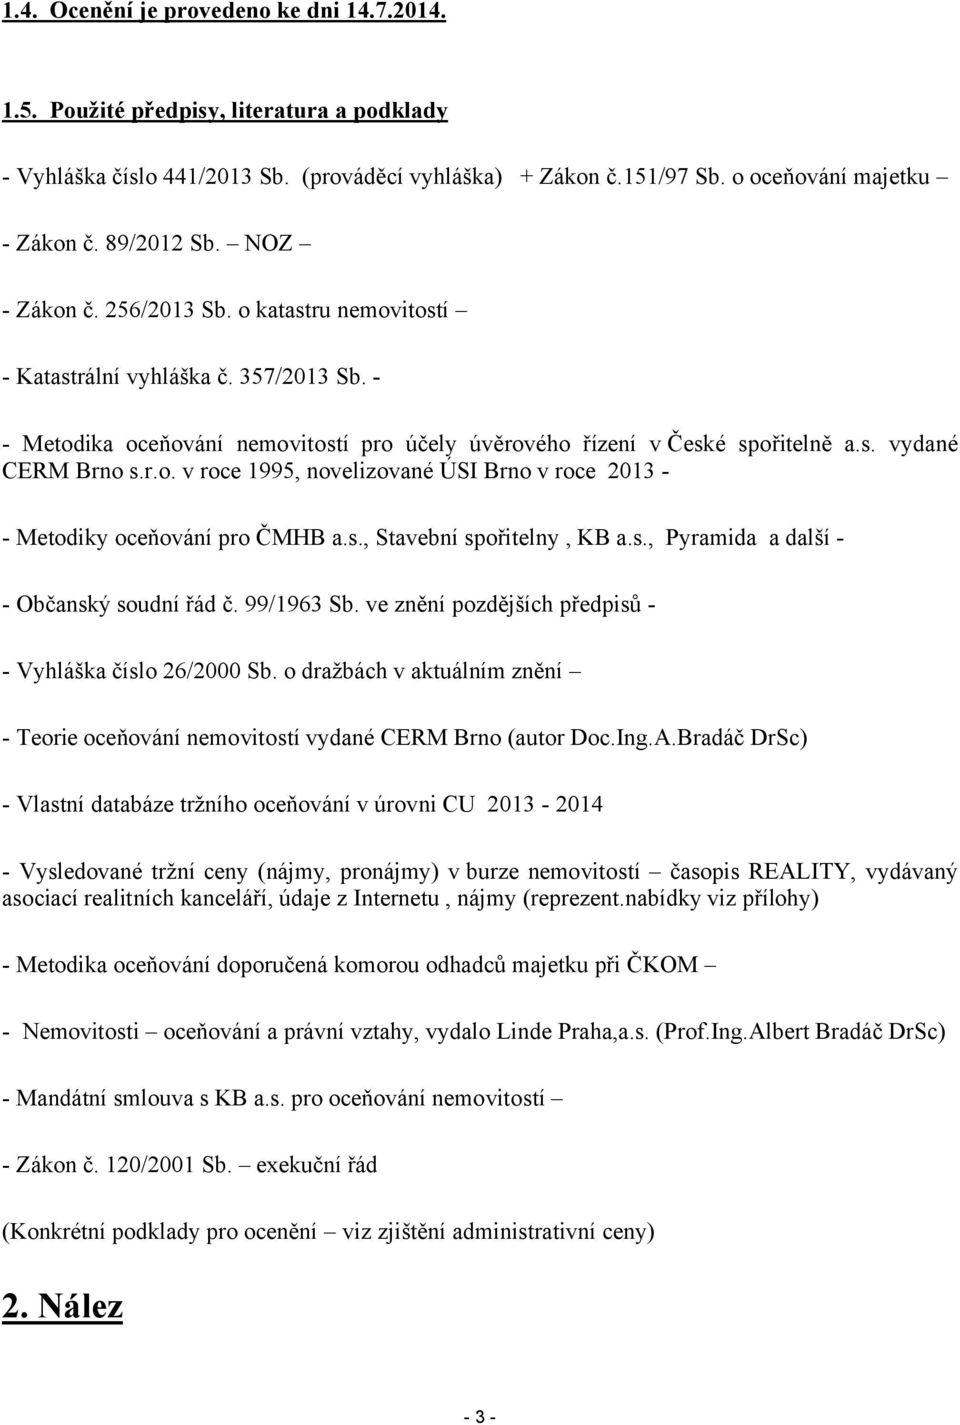 r.o. v roce 1995, novelizované ÚSI Brno v roce 2013 - Metodiky oceňování pro ČMHB a.s., Stavební spořitelny, KB a.s., Pyramida a další - Občanský soudní řád č. 99/1963 Sb.